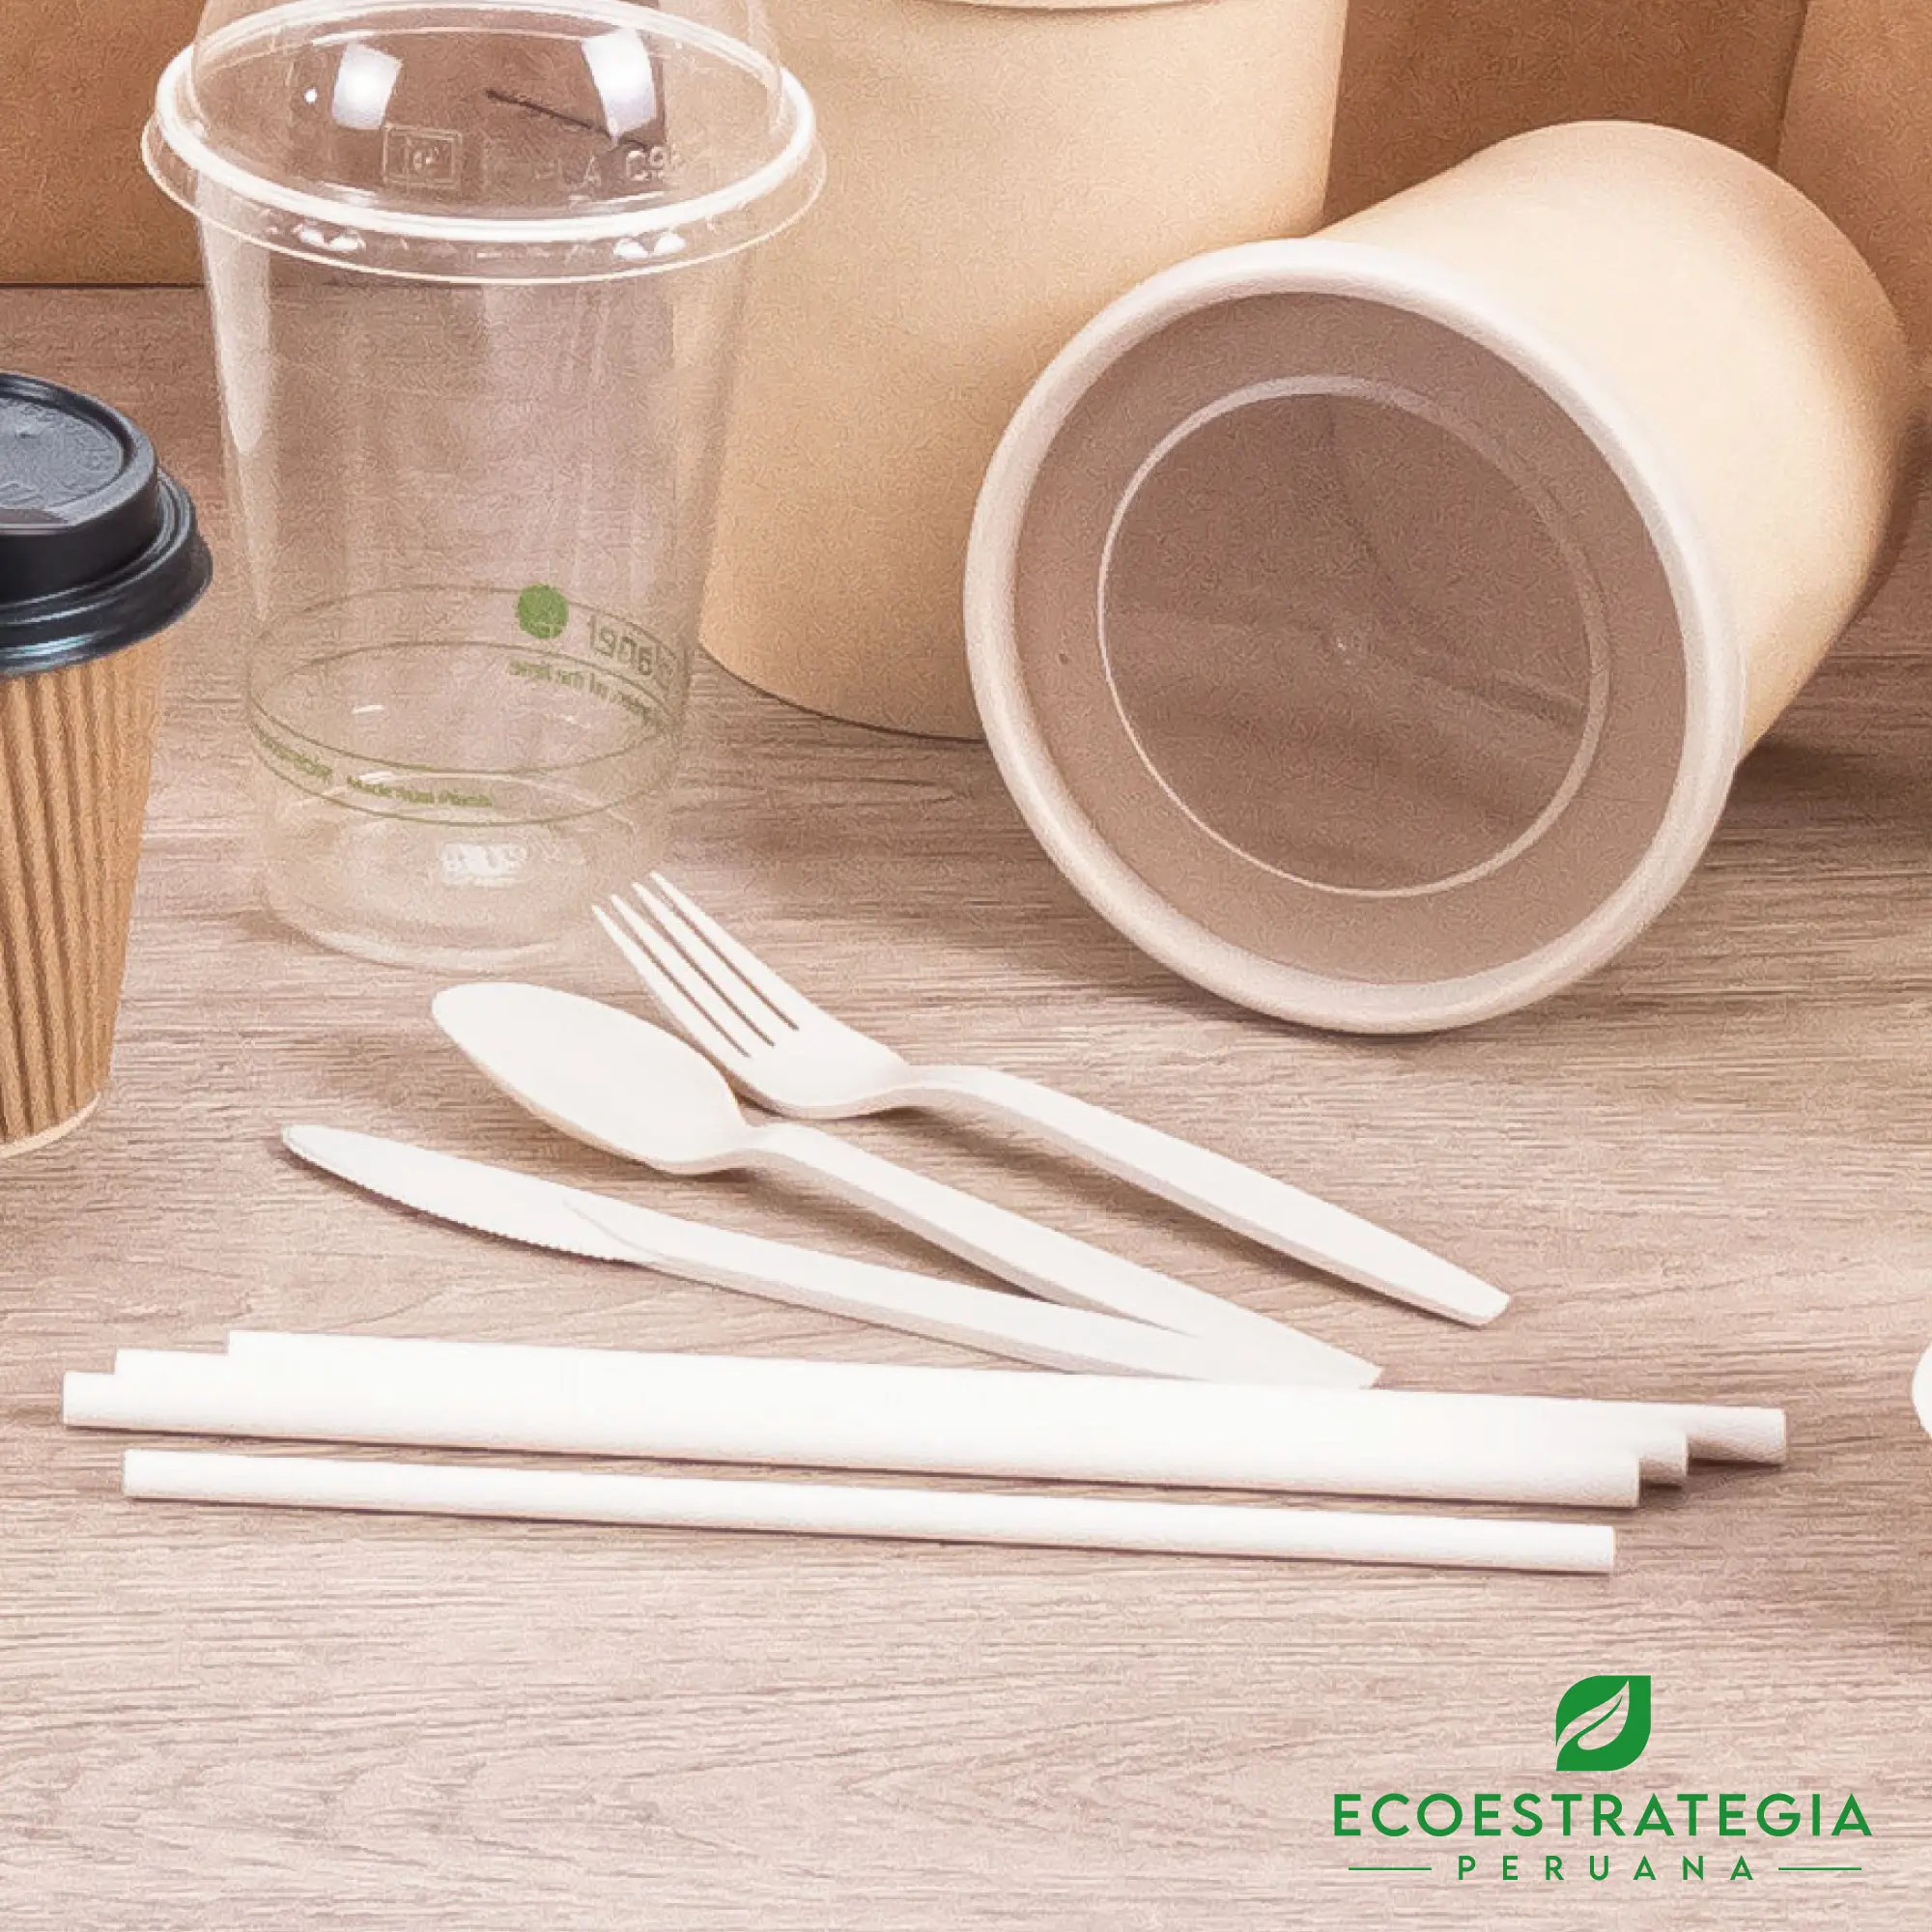 Cubiertos biodegradables EP-C conocido también como cubierto biodegradable, cubierto ecologico, cubierto reciclable. cubierto helados, cubierto postres, cubierto menu, cuchara biodegradable 15 cm, cuchara biodegradable, cucharas compostables, cuchara eco 16 fibra de maíz, cuchara biodegradable blanca 6”, cuchara, cuchara biodegradable cubierto, productos compostables, cuchara descartable biodegradable, cubiertos compostables, set de cubiertos eco, cucharas ecológicas, cubiertos biodegradables, cuchara blanca biodegradable, cuchara para delivery, cucharas biodegradables peru, importadores de cucharas cubiertos biodegradables, mayoristas de cucharas cubiertos biodegradables, distribuidores de cucharas cubiertos biodegradables